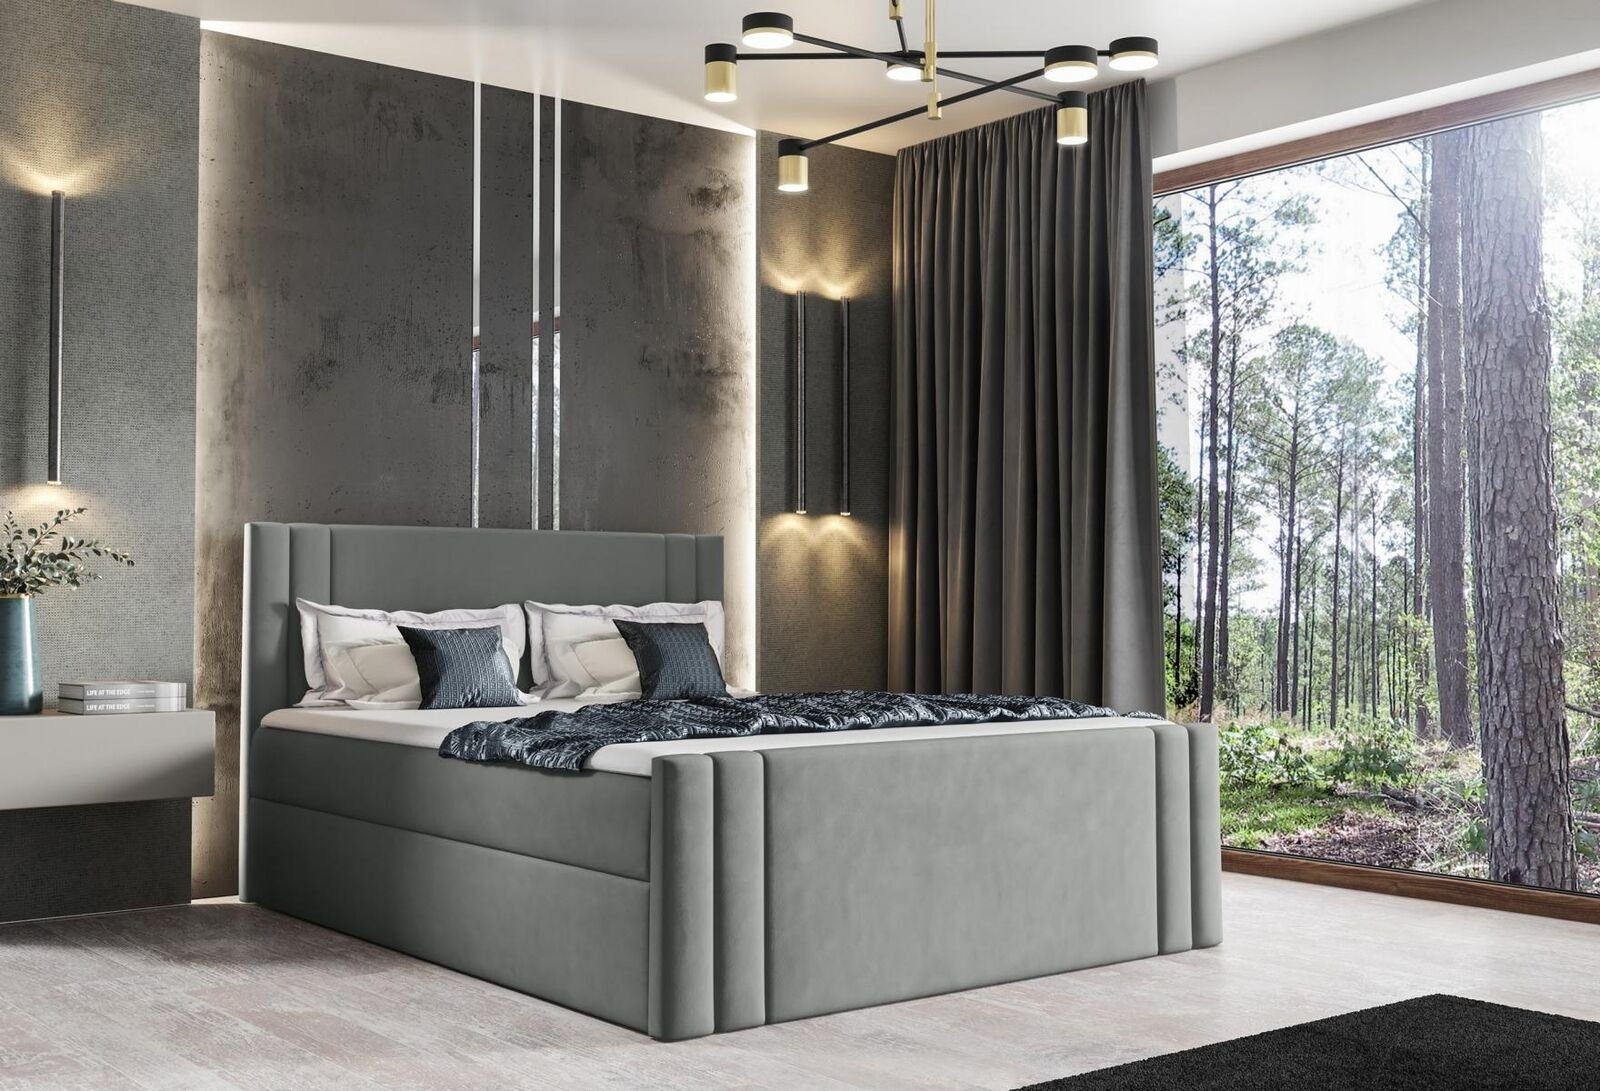 JVmoebel Bett, Bett Schlafzimmer Betten Polster Design Doppel Hotel Luxus 180x200 Silber